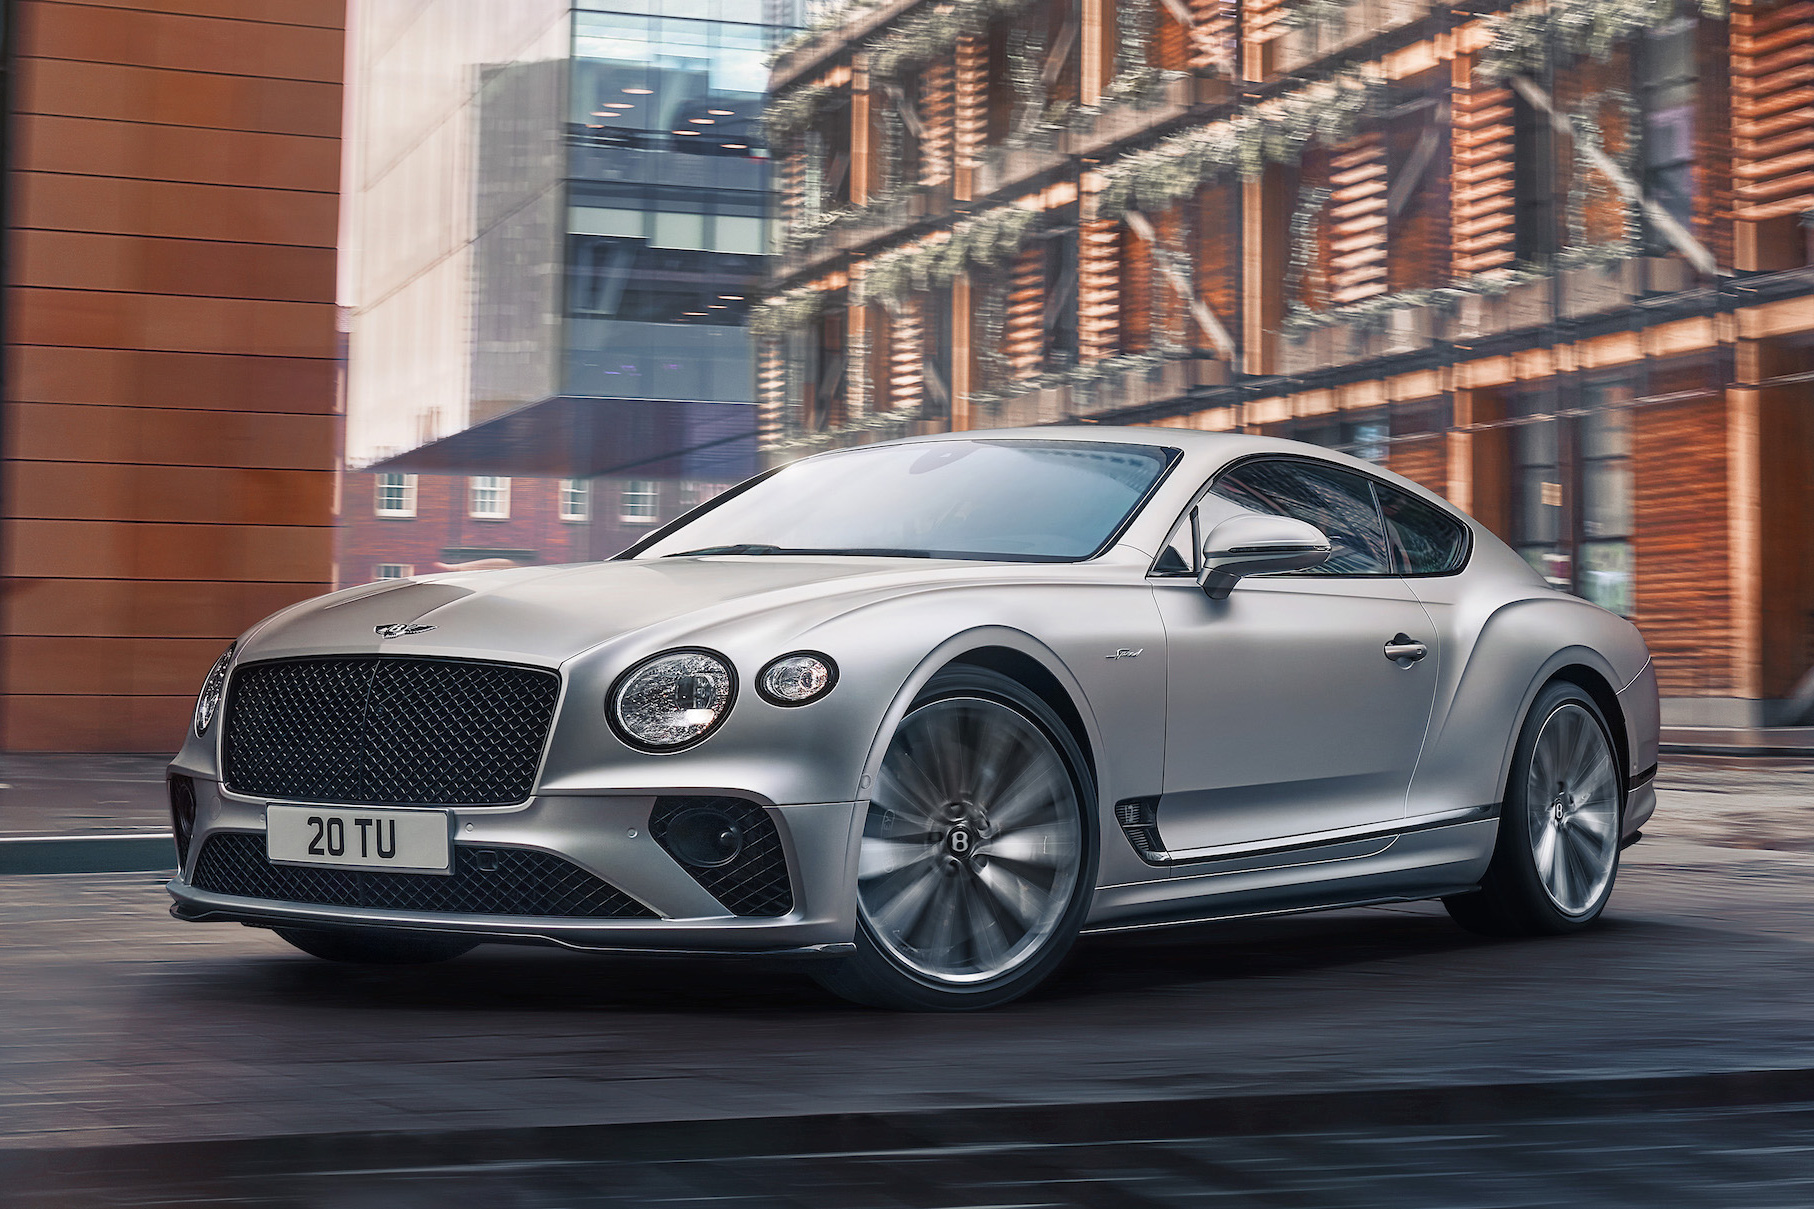 Ra mắt Bentley Continental GT Speed đời mới - Xe vận hành đỉnh nhất của Bentley, giá quy đổi từ 6,4 tỷ